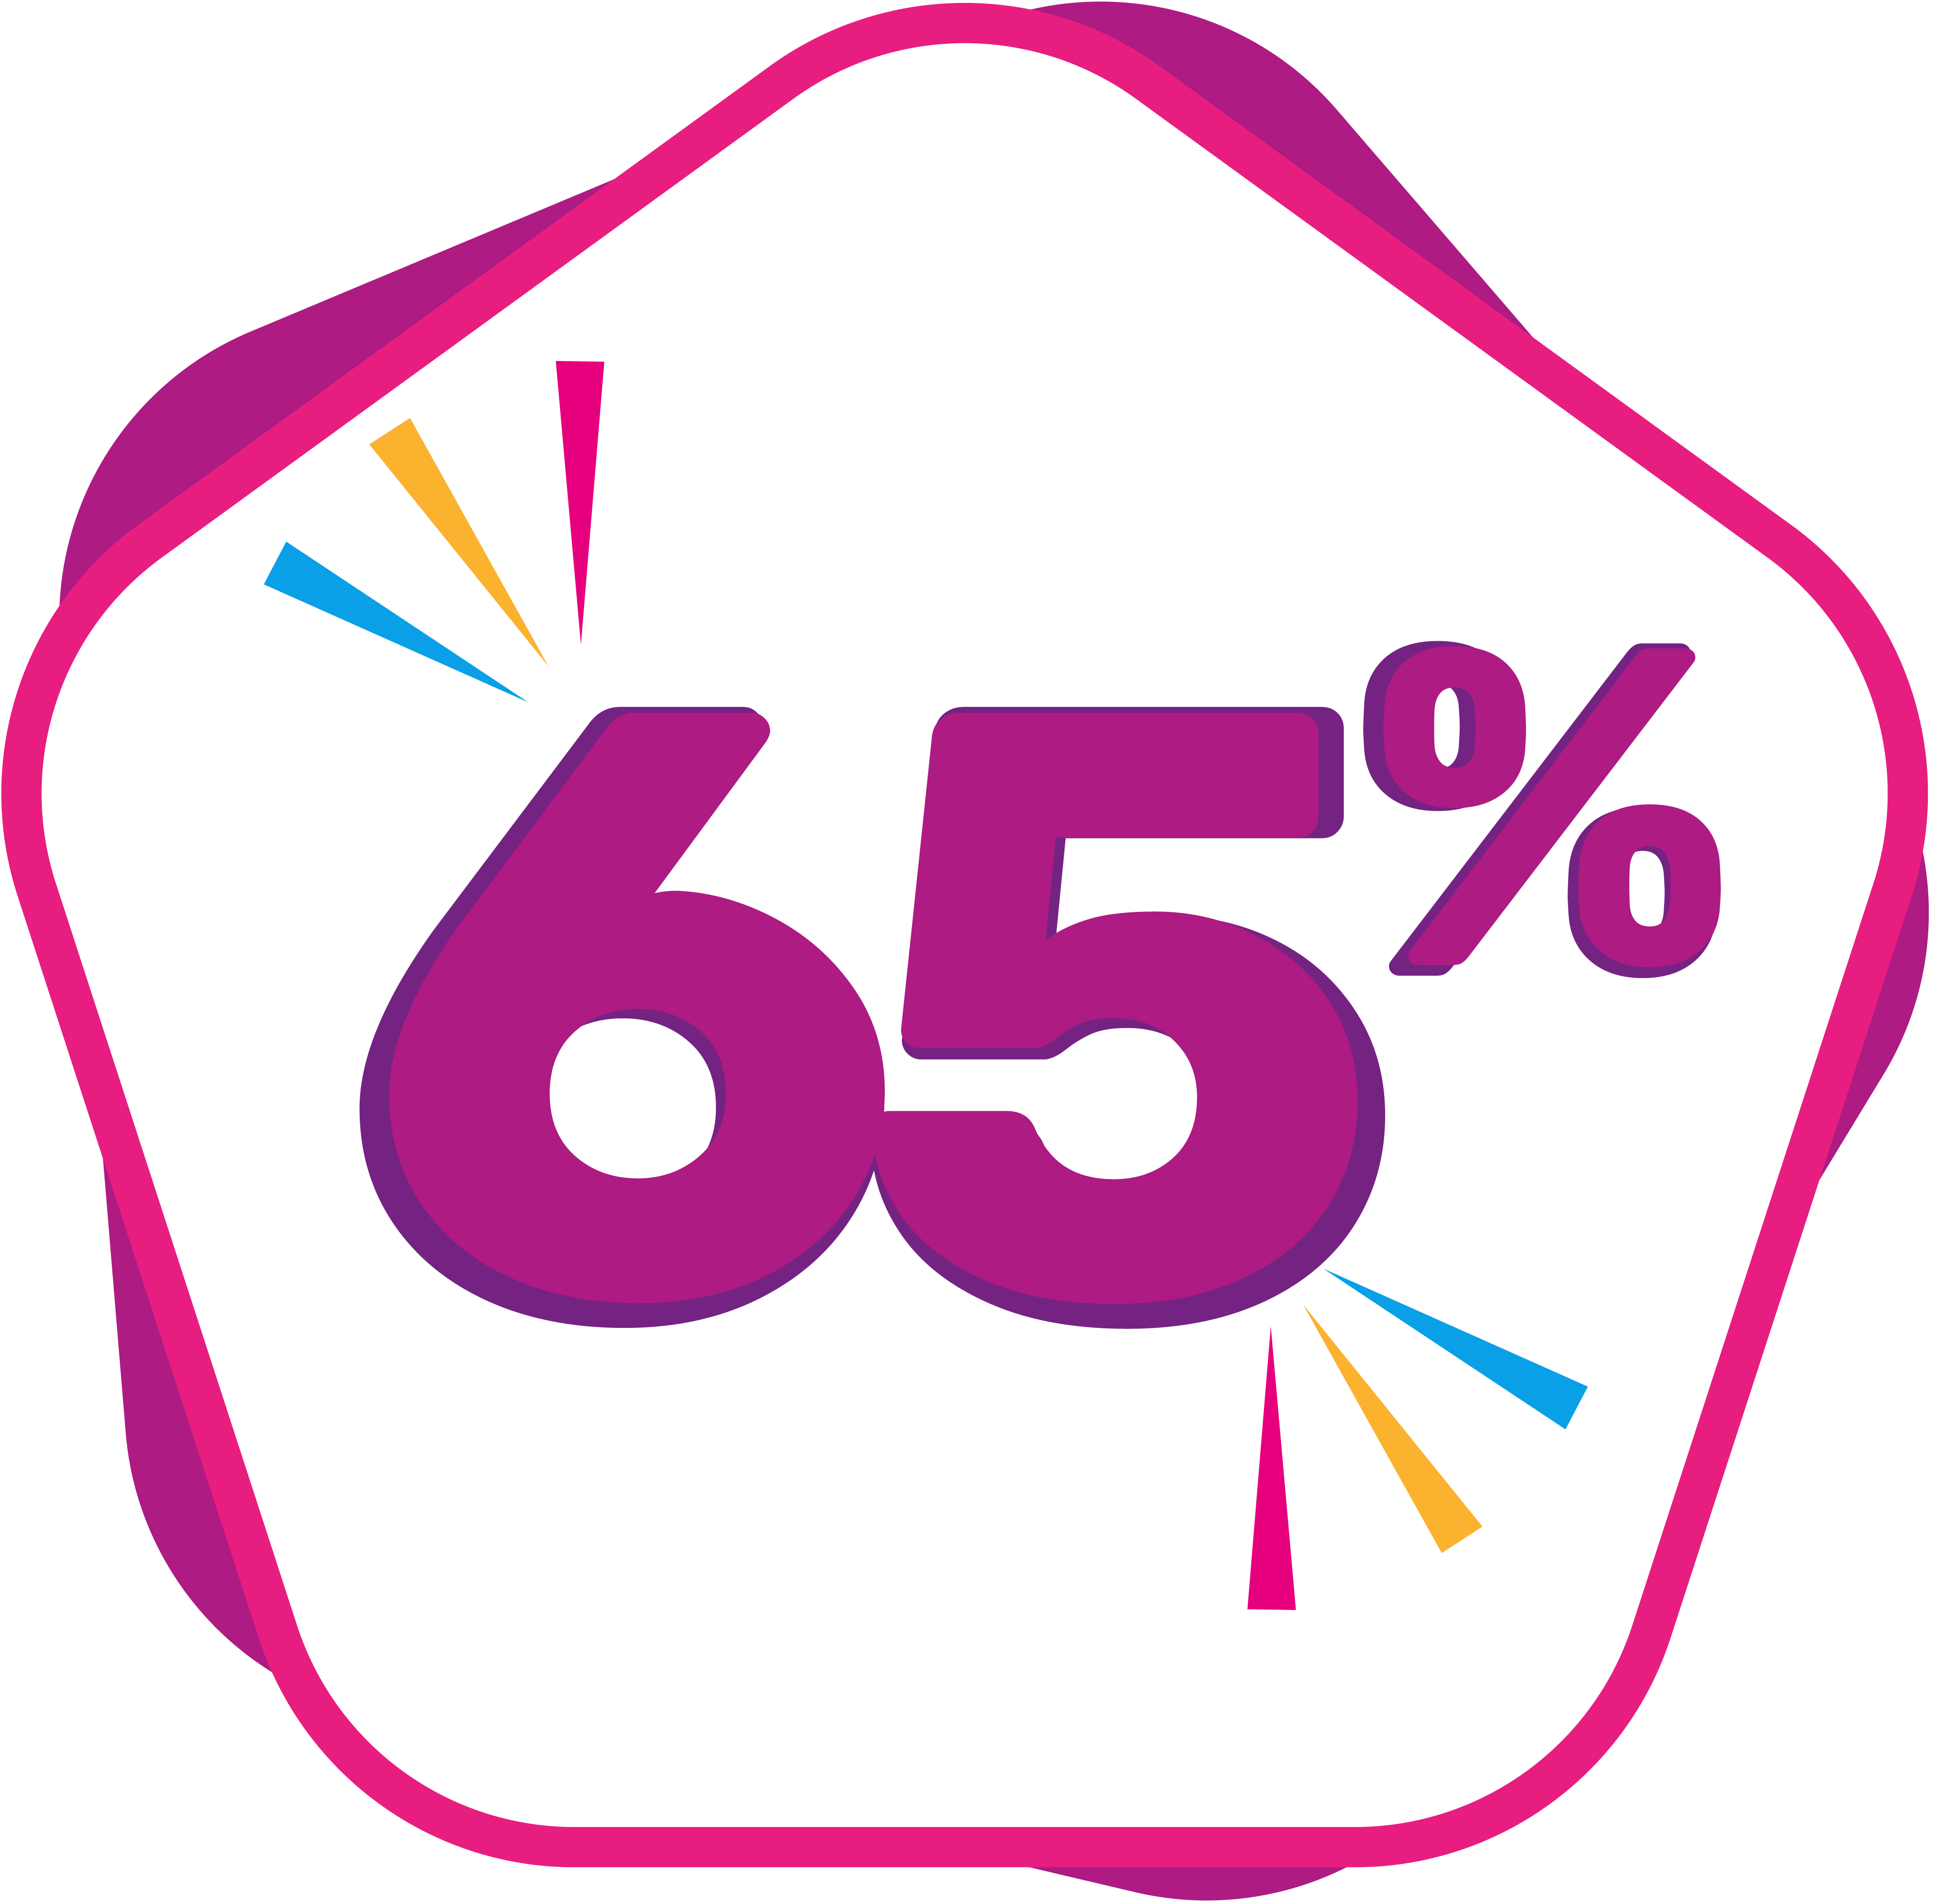 65% OFF en Farmacia y Perfumer=ía Catedral, descuentos todos los días de la Semana en la Secciones de Medicamentos, Bebes, Hogar, Perfumer&ia, Fragancias, Cosmetica 